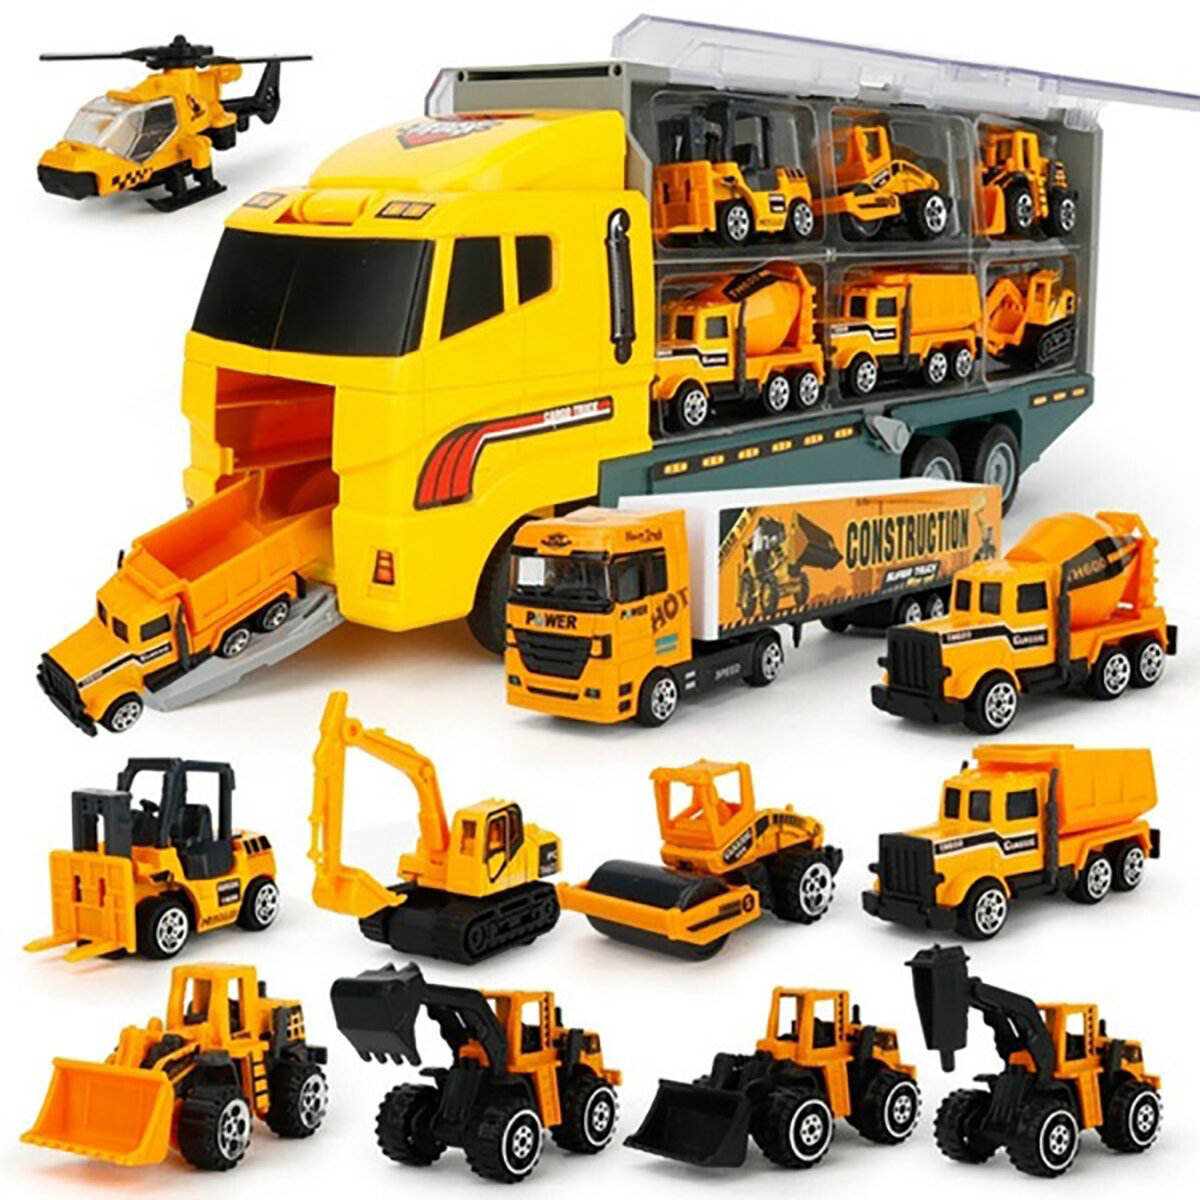 construction vehicle toy set